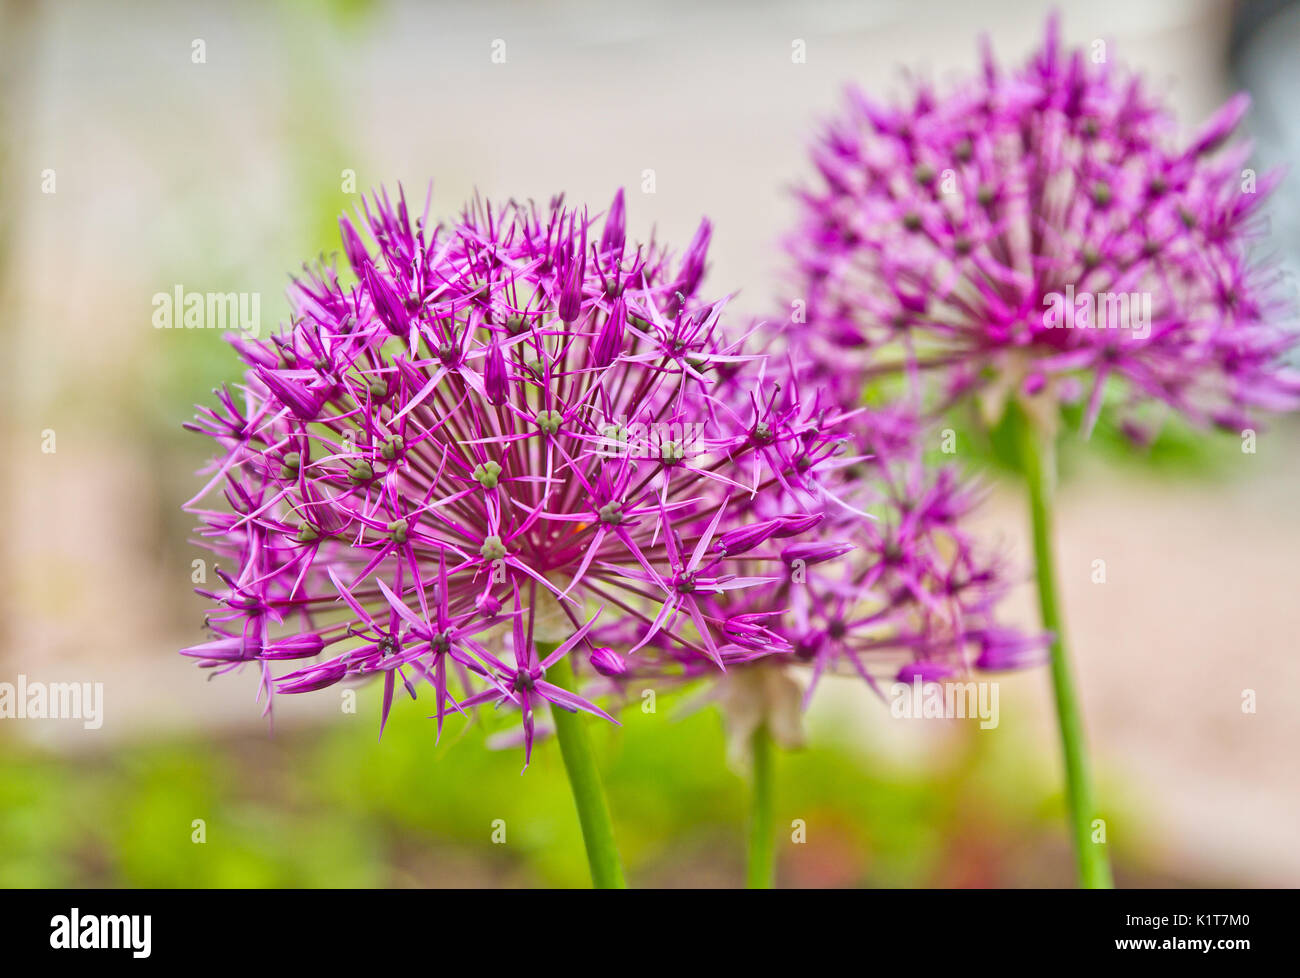 Viola allium fiore. allium hollandicum 'viola sensazione', allium, fiore viola Foto Stock